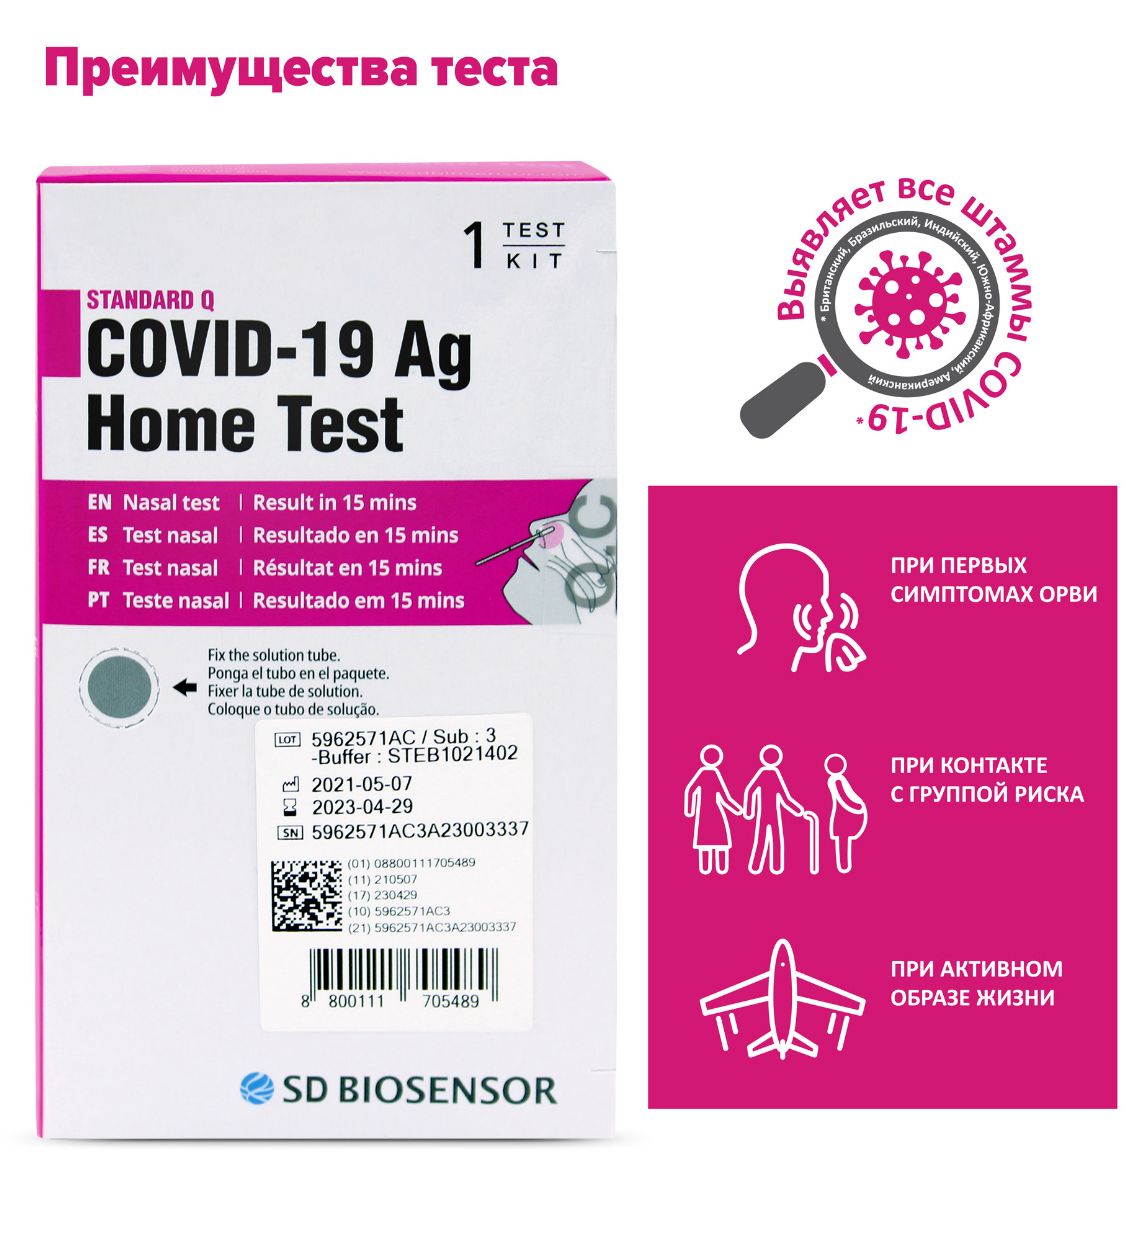 STANDARD Q COVID-19 Ag Home Test